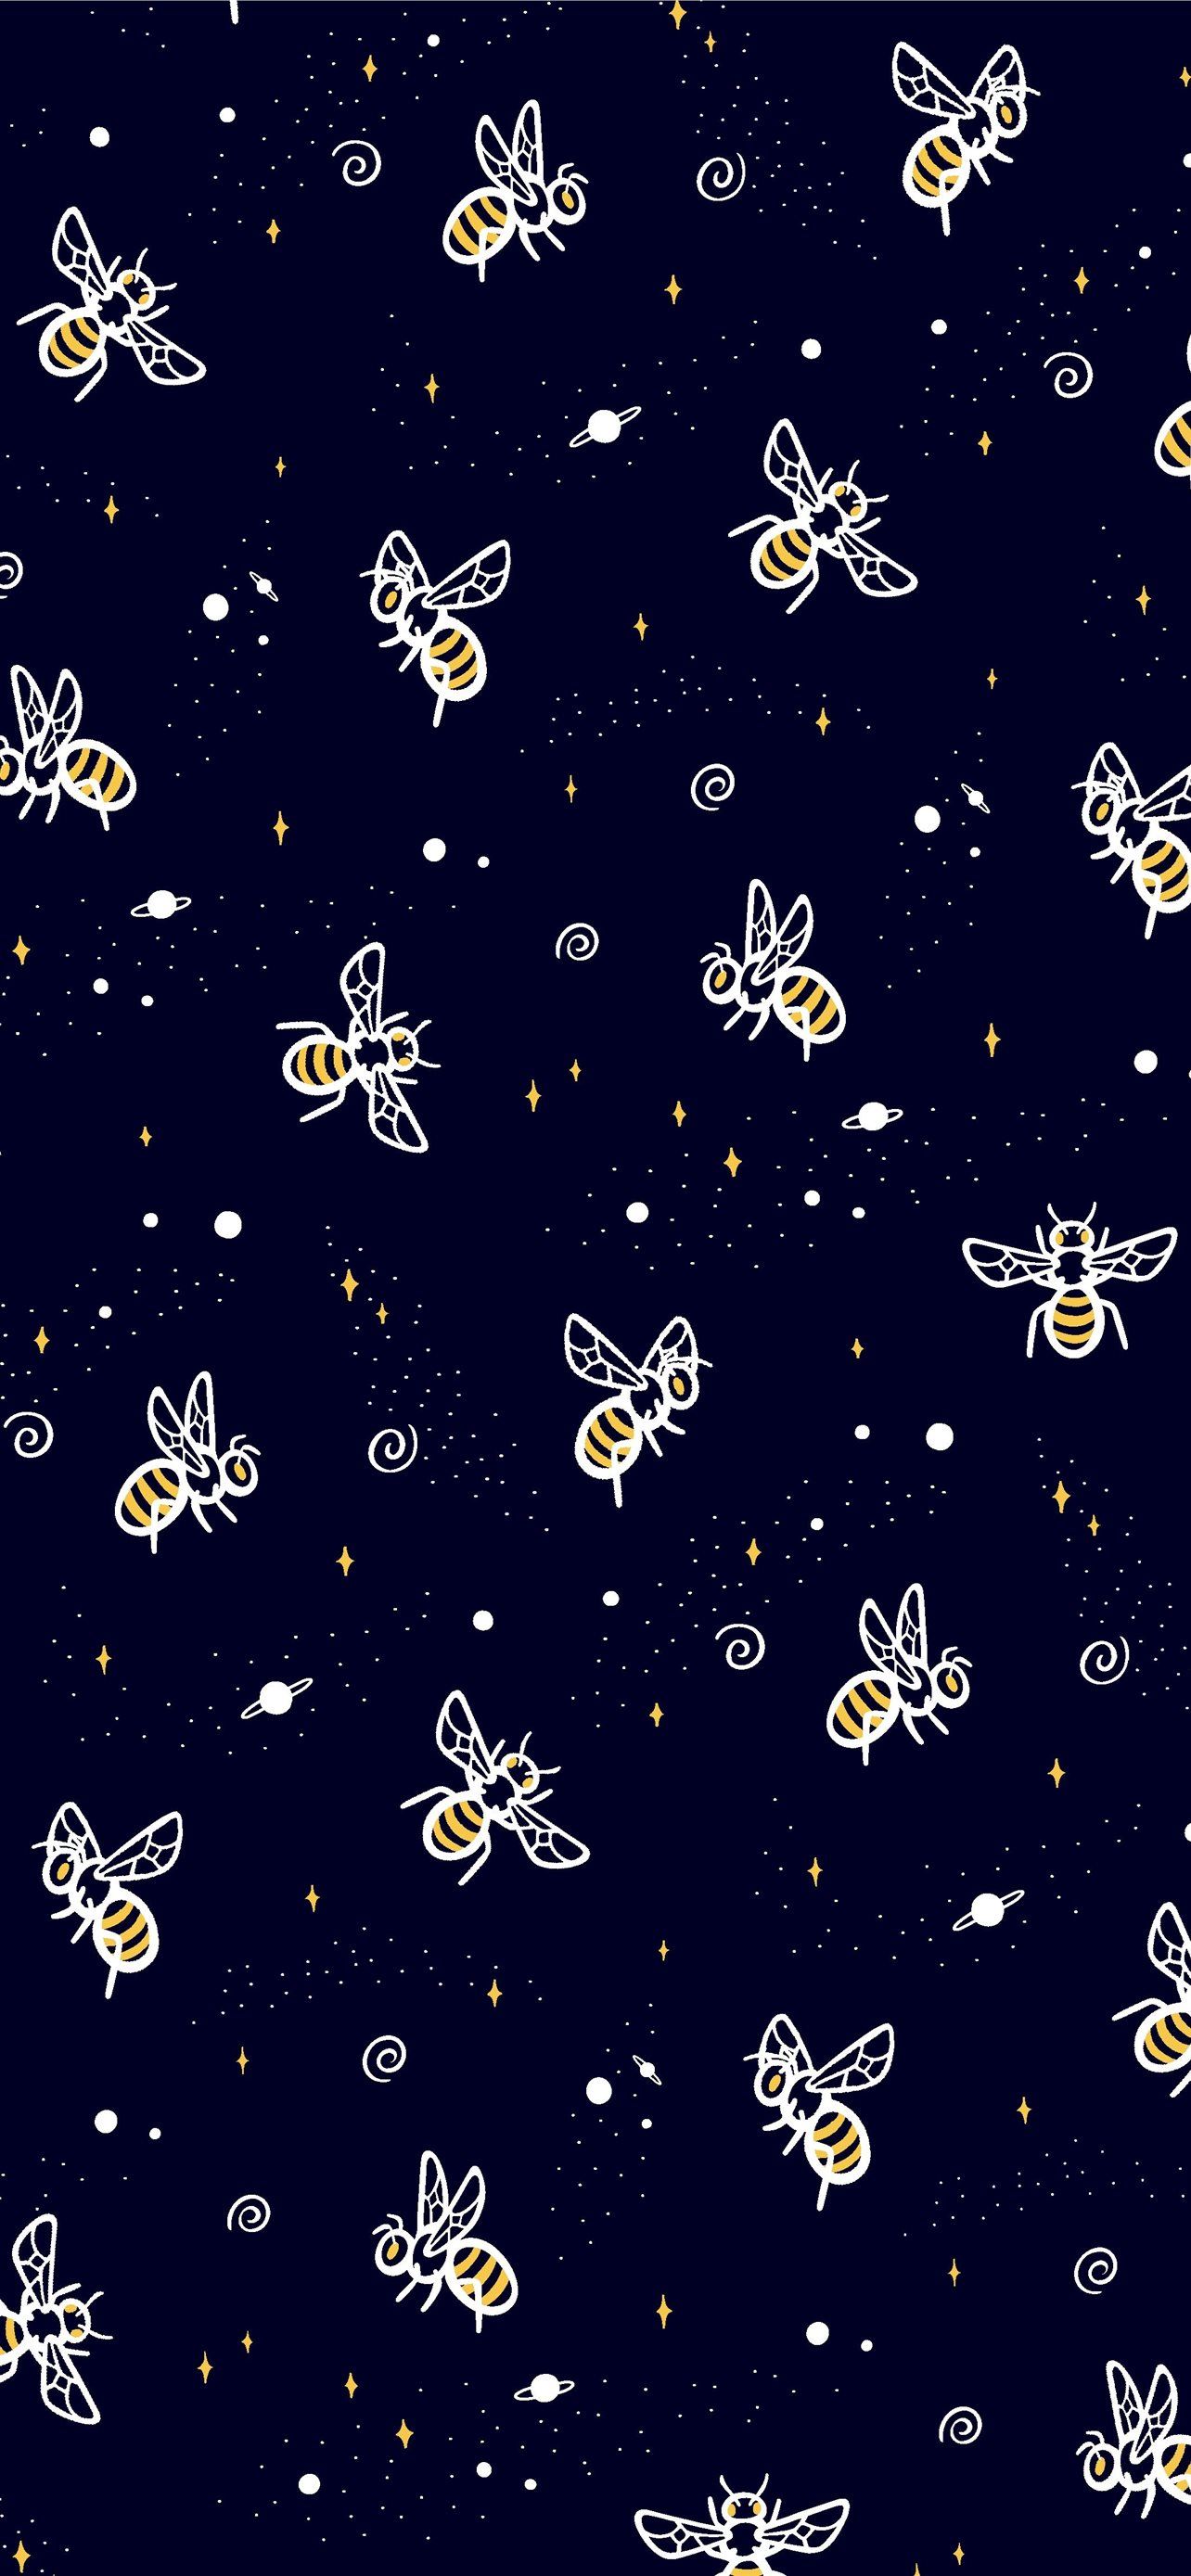 Best Bee Iphone Hd Wallpapers Ilikewallpaper